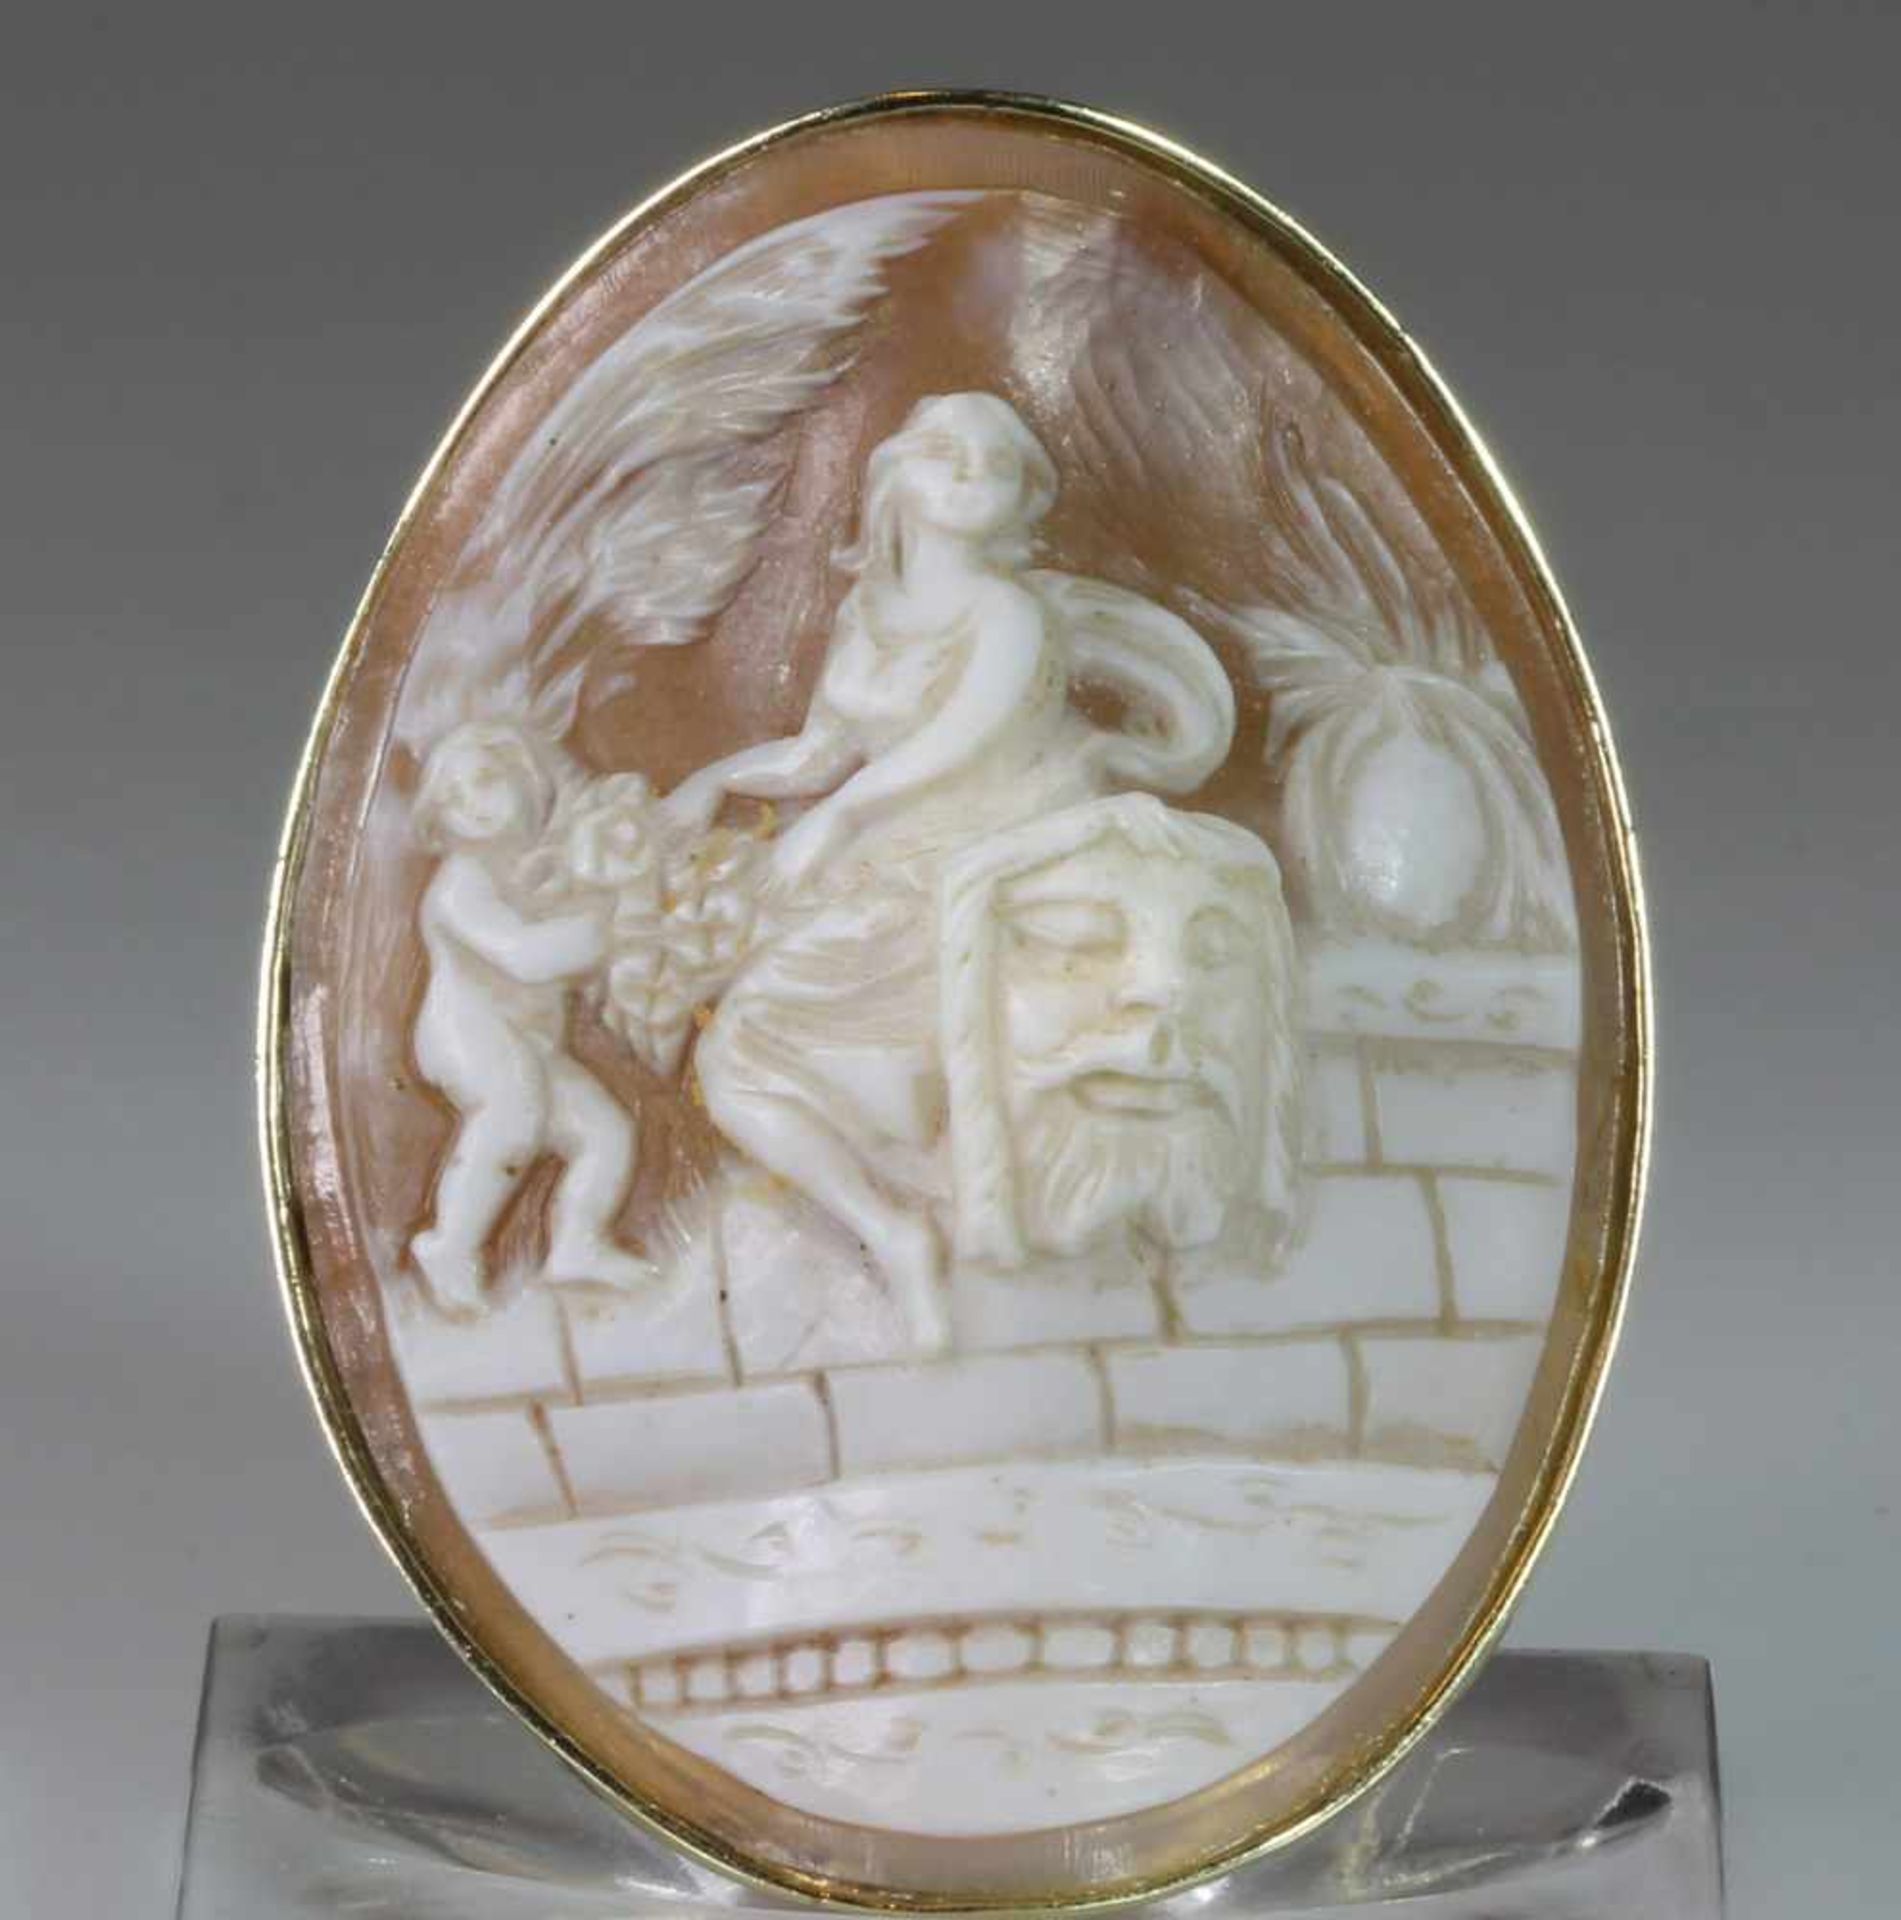 Anhänger/Brosche, GG 585, Muschelkamee, mythologische Darstellung, 17 g, 5.5 x 4.5 cm- - -25.00 % - Image 2 of 2